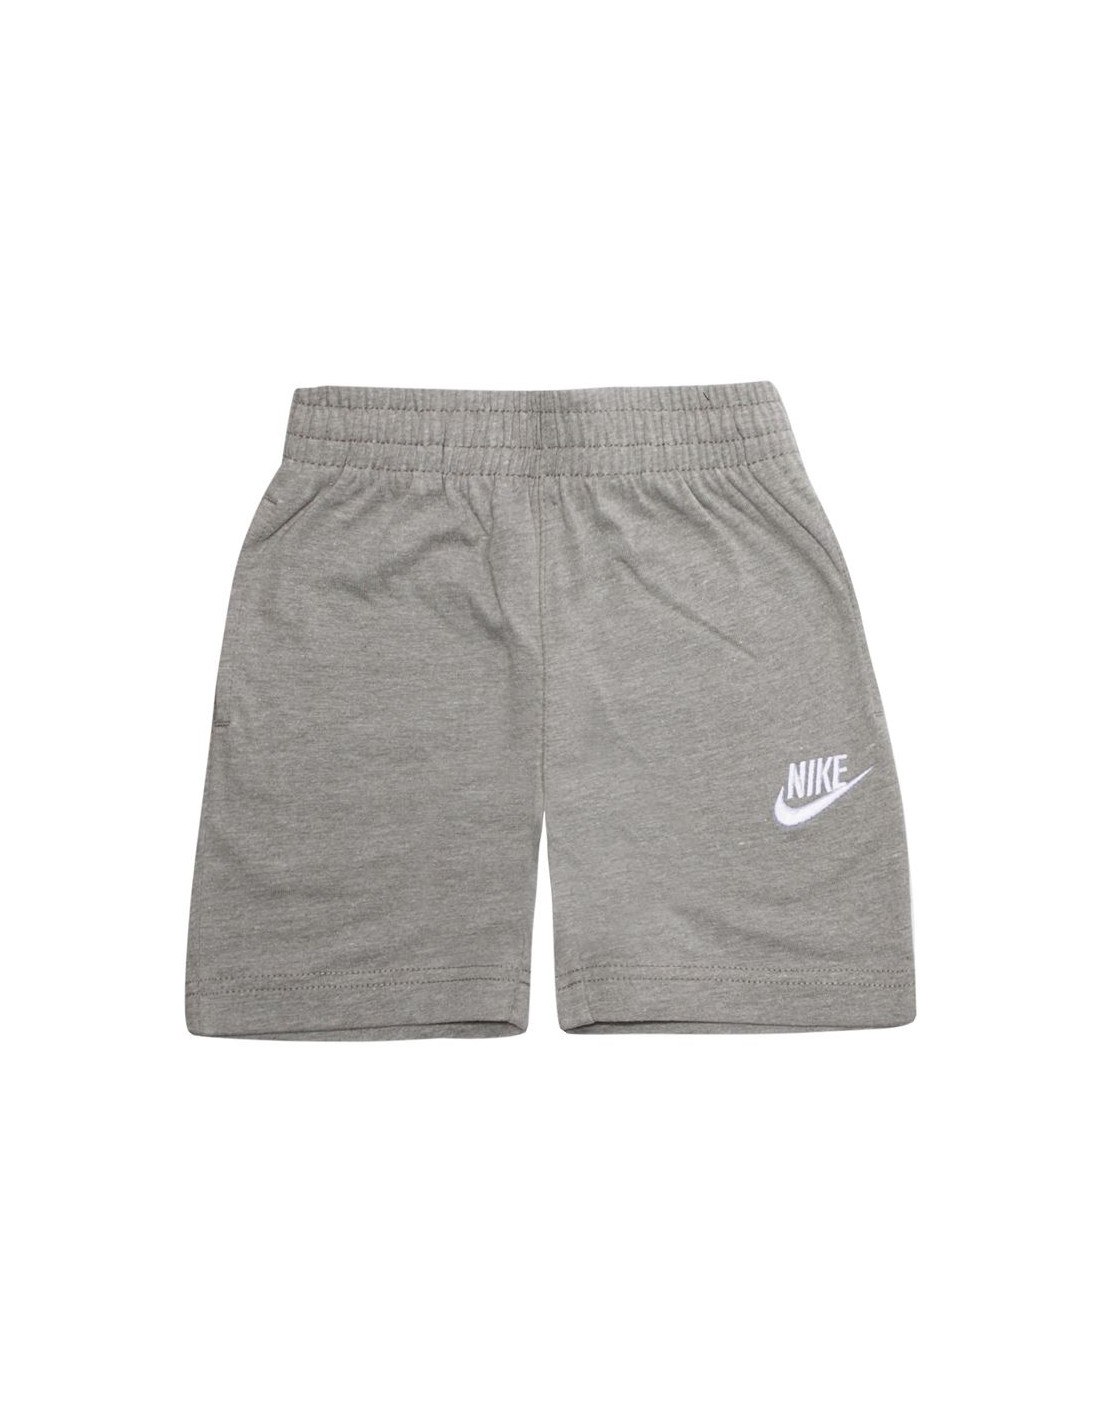 Pantalones cortos nike club grey